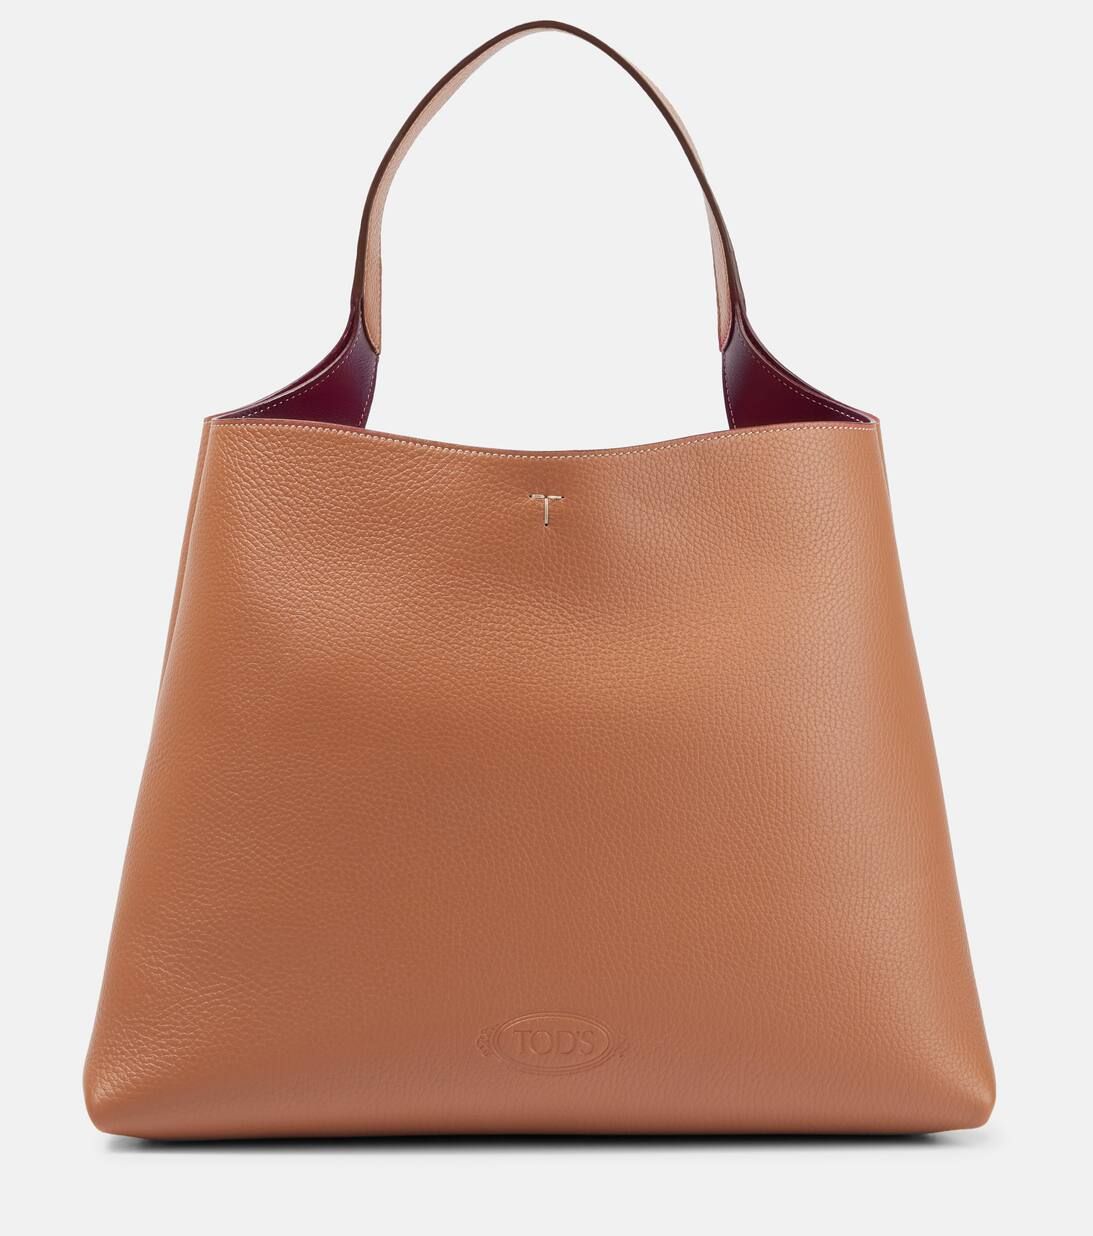 Medium leather tote bag | Mytheresa (US/CA)